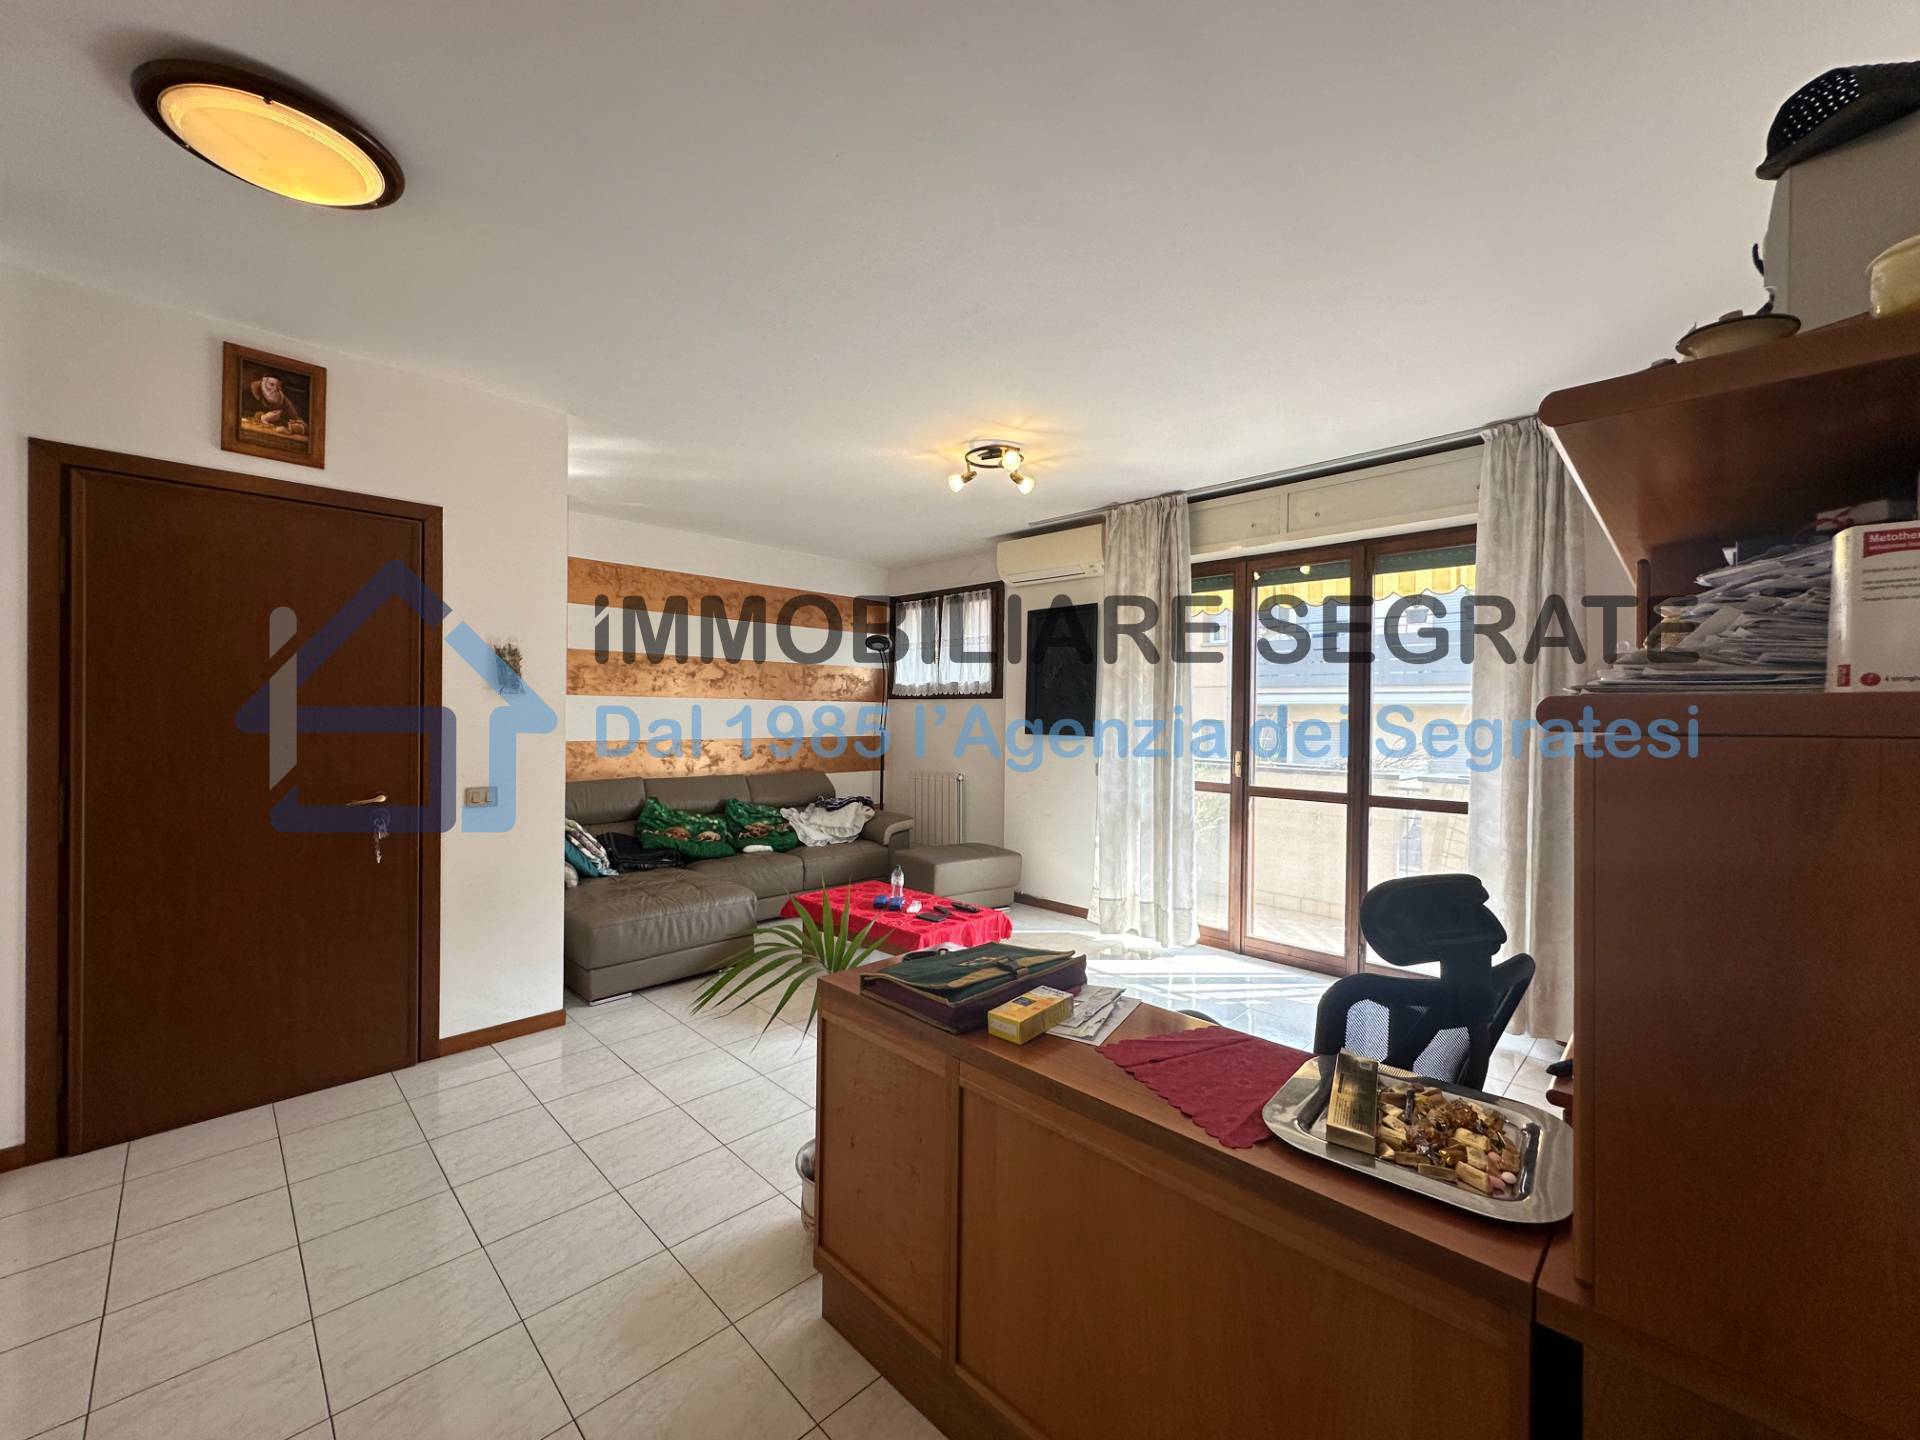 Appartamento in vendita a Pioltello, 3 locali, prezzo € 229.000 | PortaleAgenzieImmobiliari.it